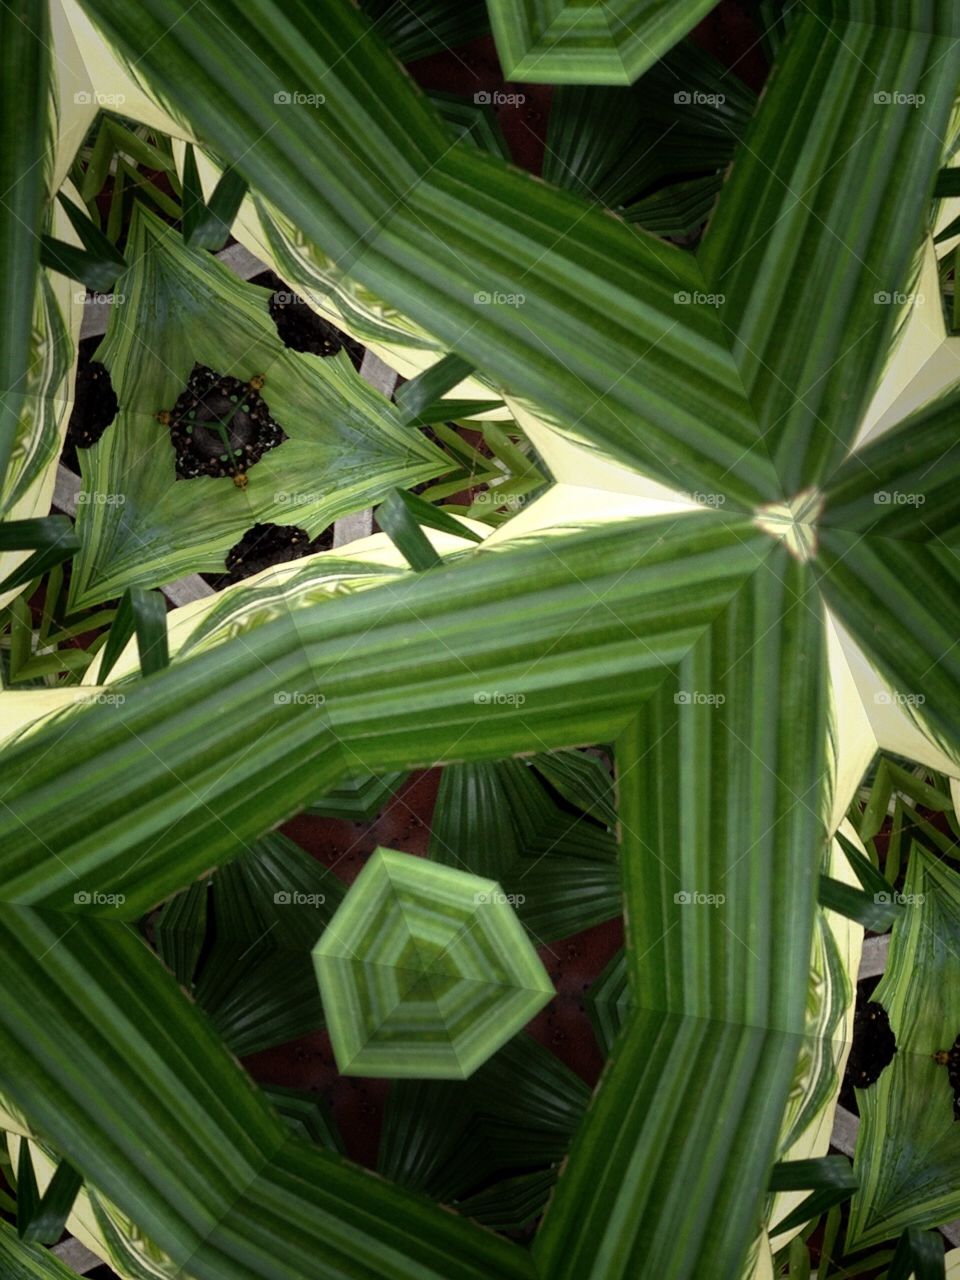 Kaleidoscope 15. My garden 